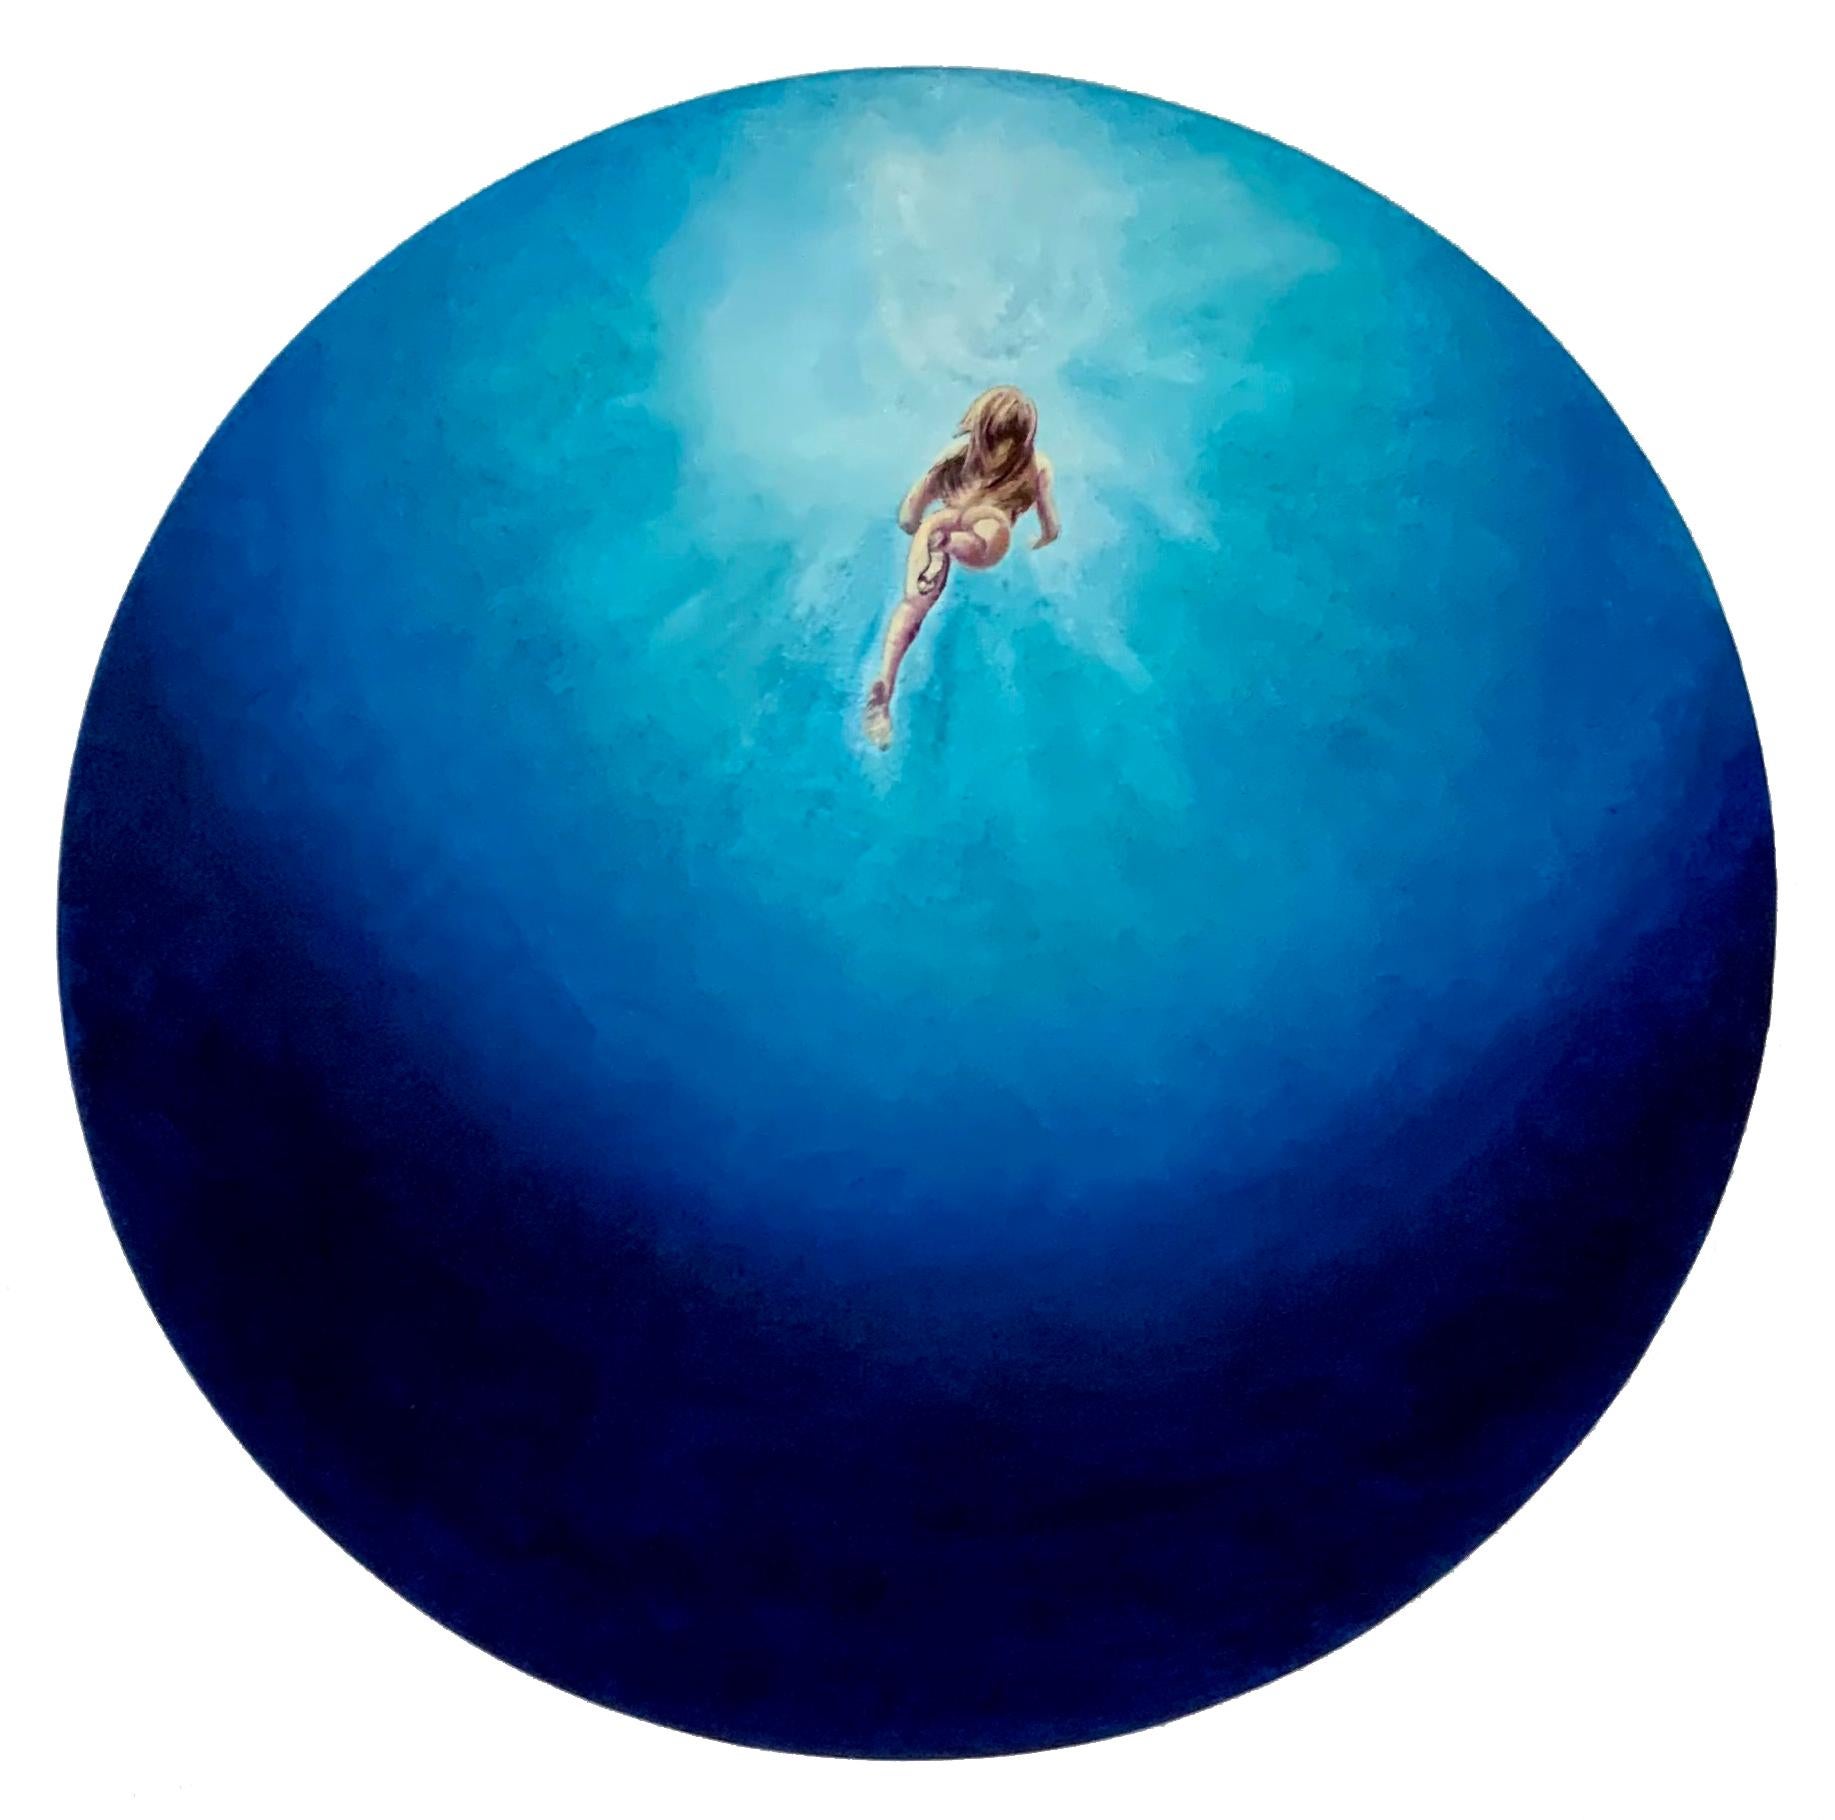 « Bleu velours », tons bleus vifs, peinture circulaire d'eau de mer avec nageoir nu